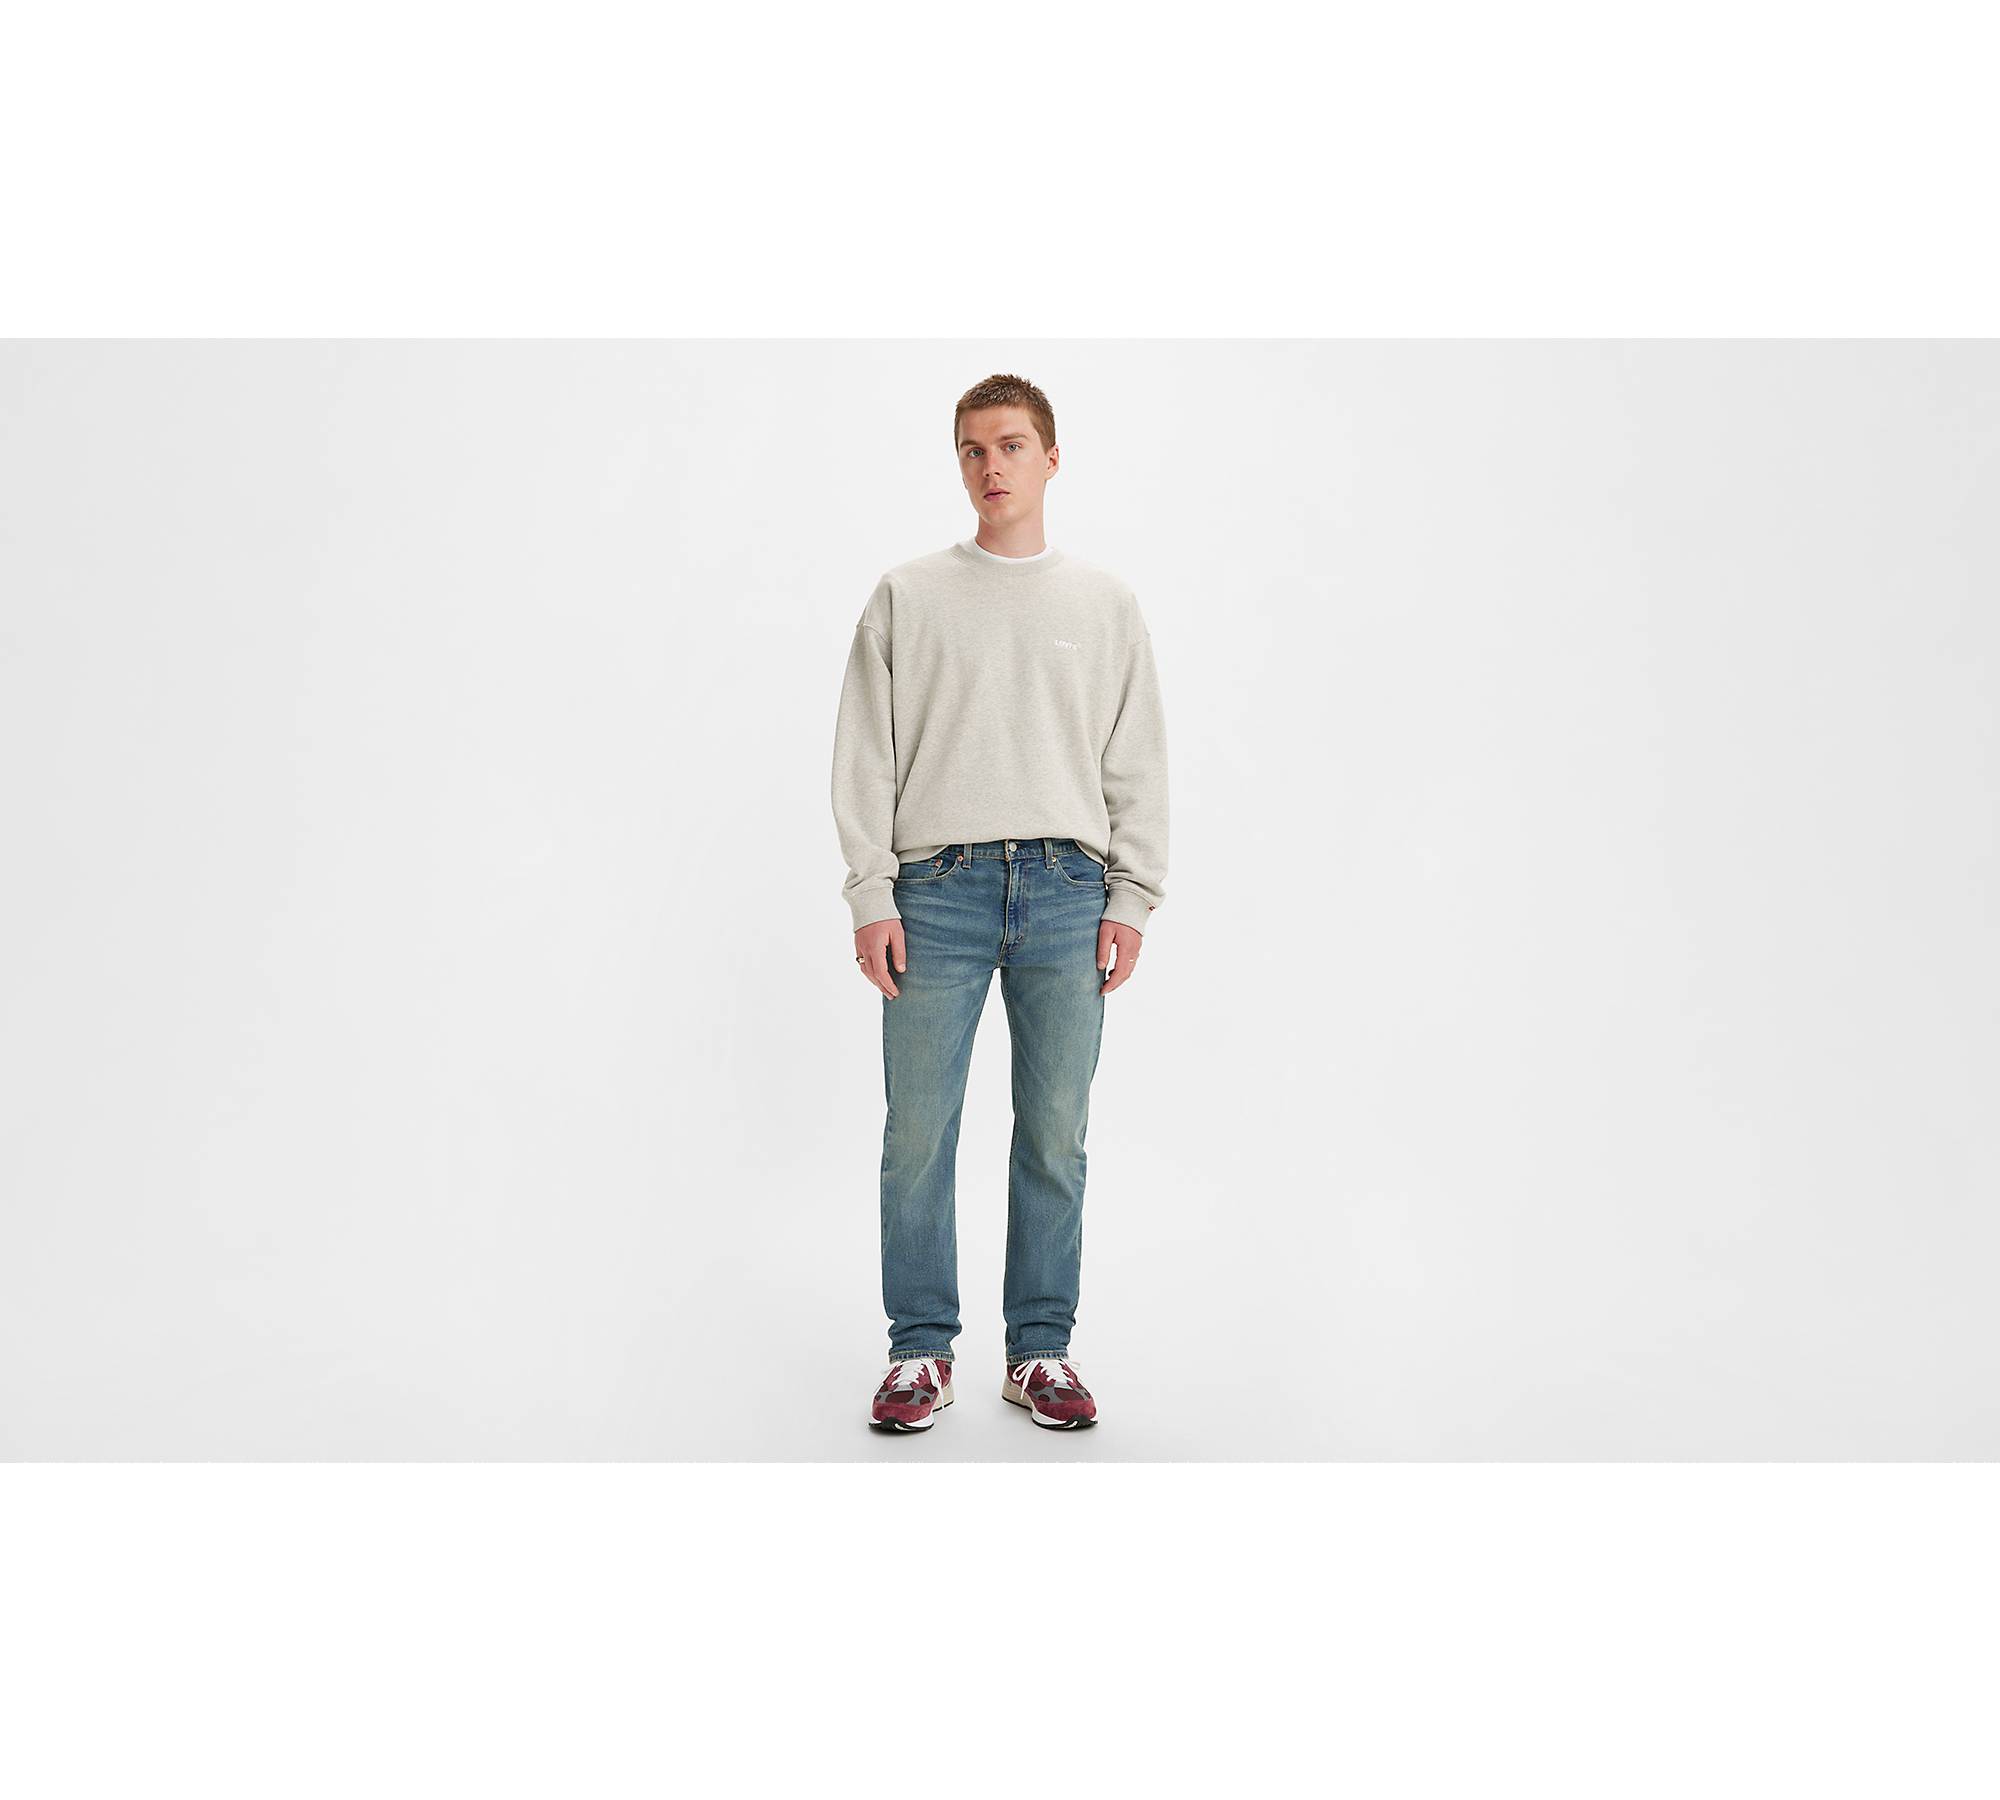 Høne jord Ekspert 505™ Regular Fit Men's Jeans - Dark Wash | Levi's® US